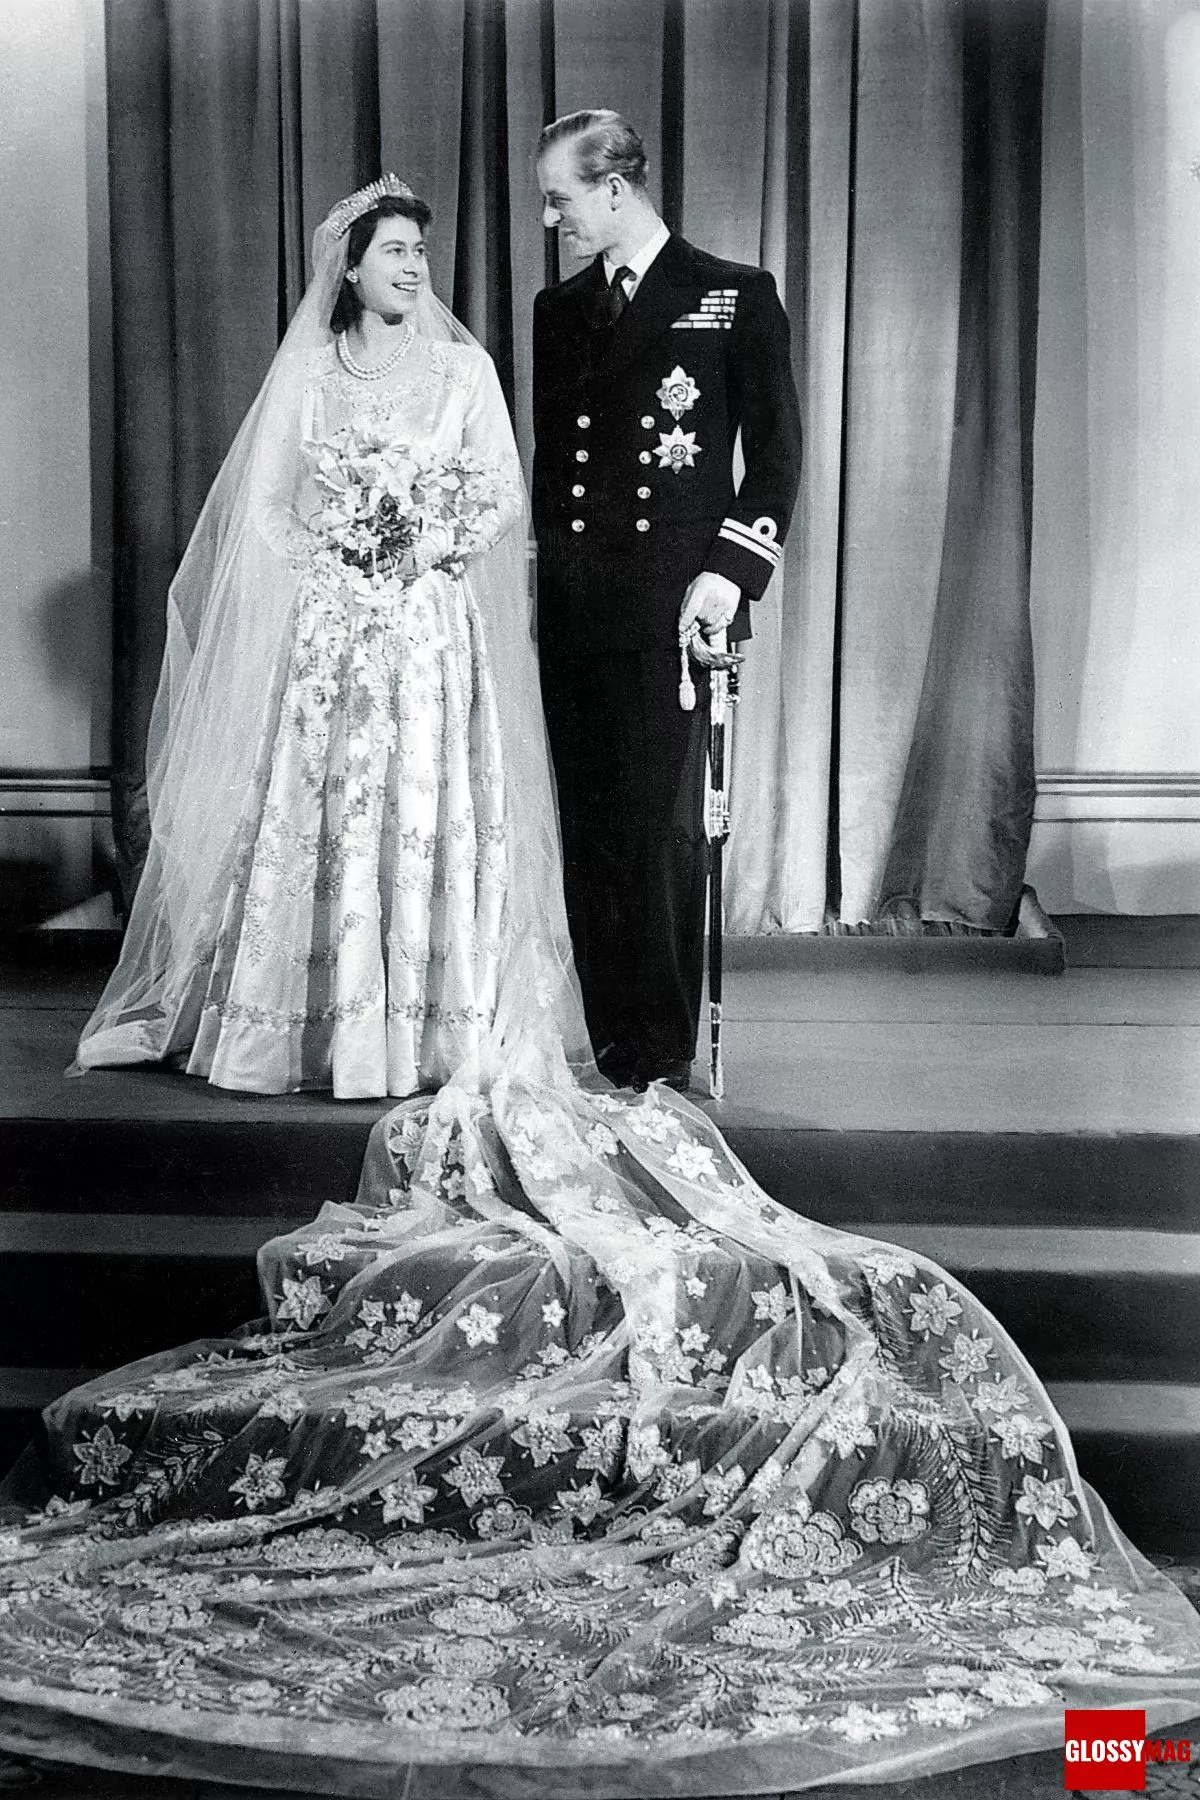 Британская принцесса Елизавета (будущая королева Елизавета II) и Филипп, герцог Эдинбургский в день своей свадьбы в Букингемском дворце, 20 ноября 1947 г.